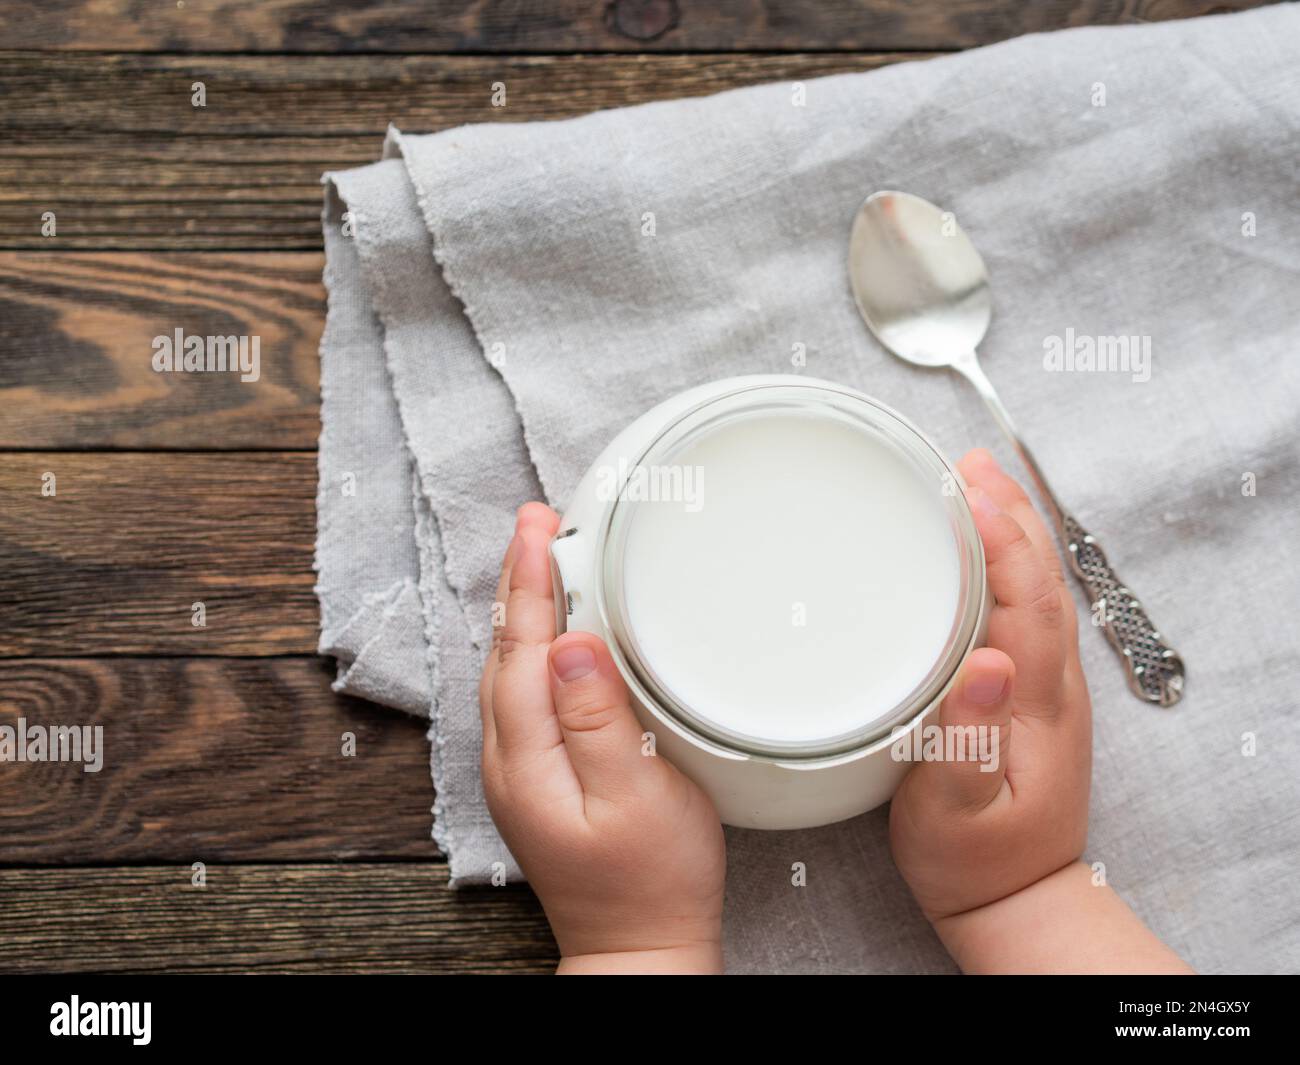 Yogurt naturale fatto in casa in un vasetto di vetro. Cibo sano per la colazione nelle mani dei bambini. Vasetto con crema acida su tovaglia di lino su legno Foto Stock